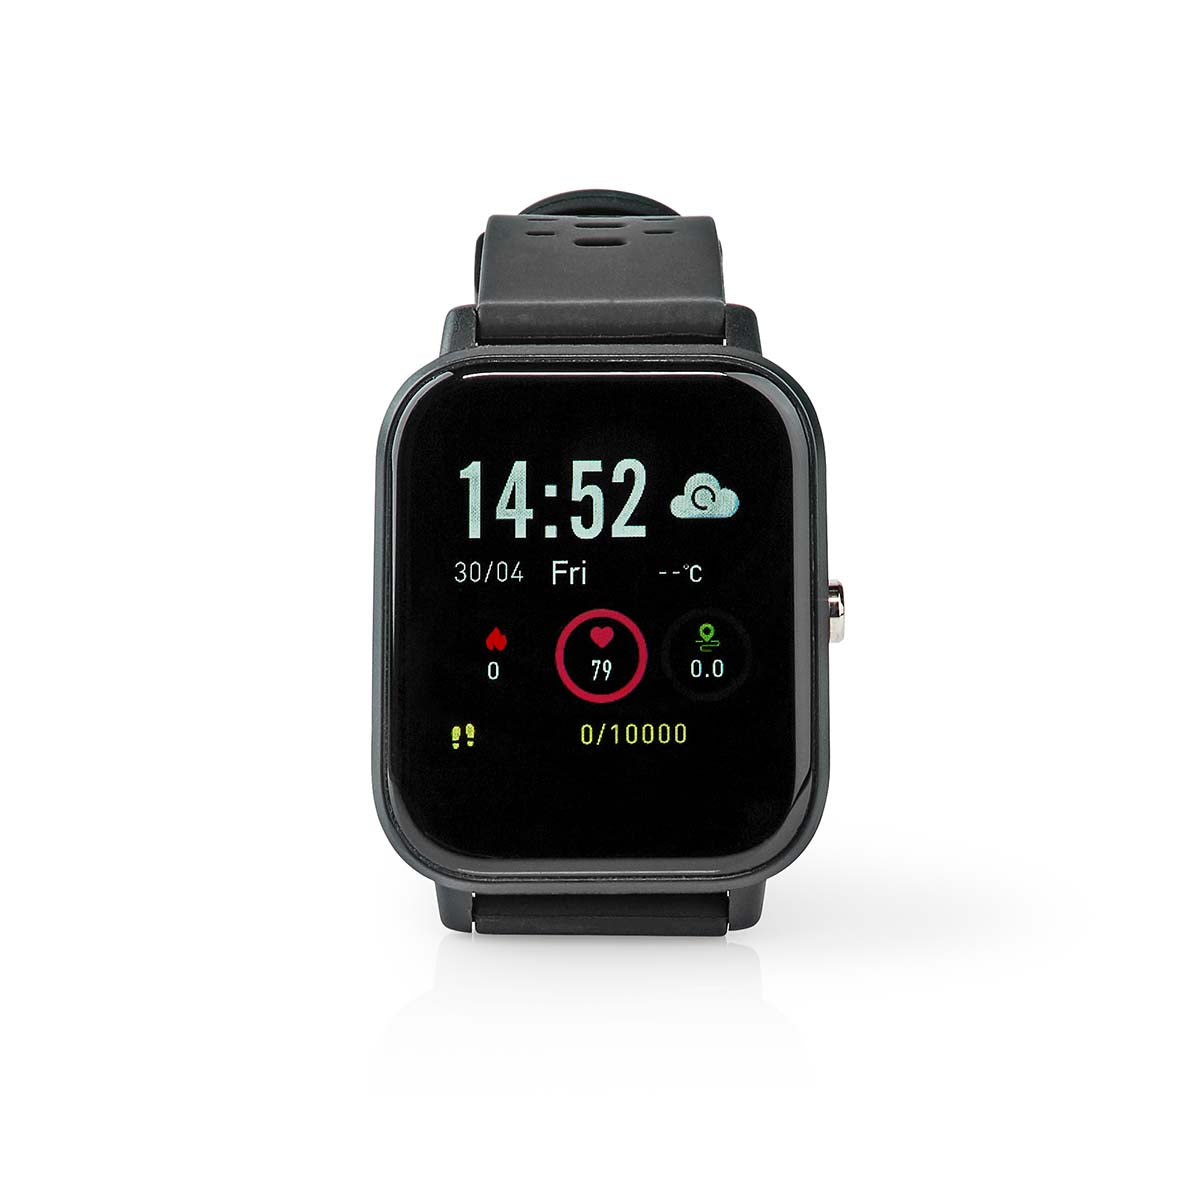 Smartwatch Armbanduhr Uhr LCD IP68 schwrz jetzt kaufen - Aktionskönig